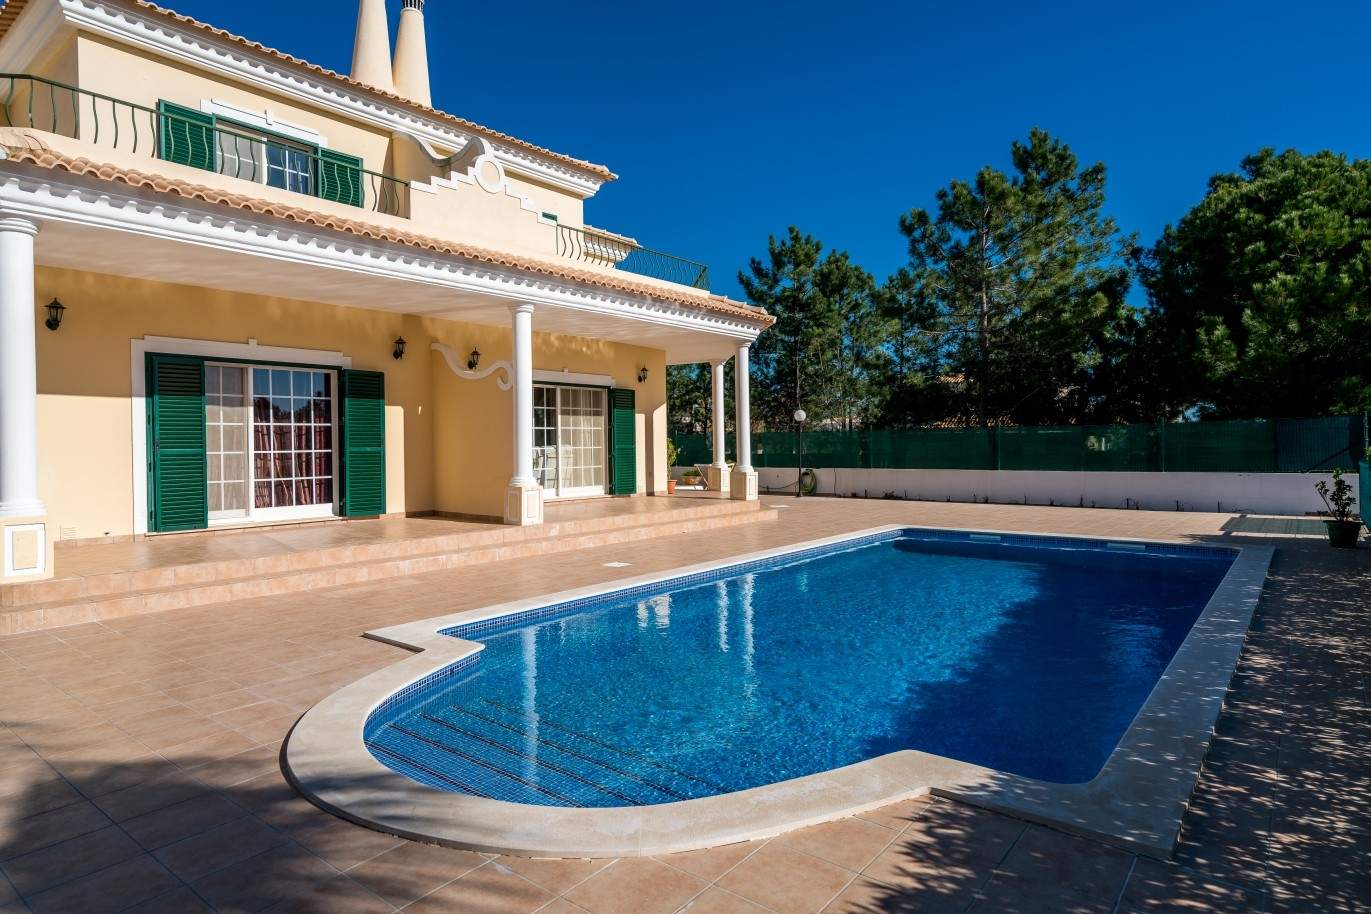 Vivienda en venta con piscina, cerca golf, Vilamoura, Algarve,Portugal_73622